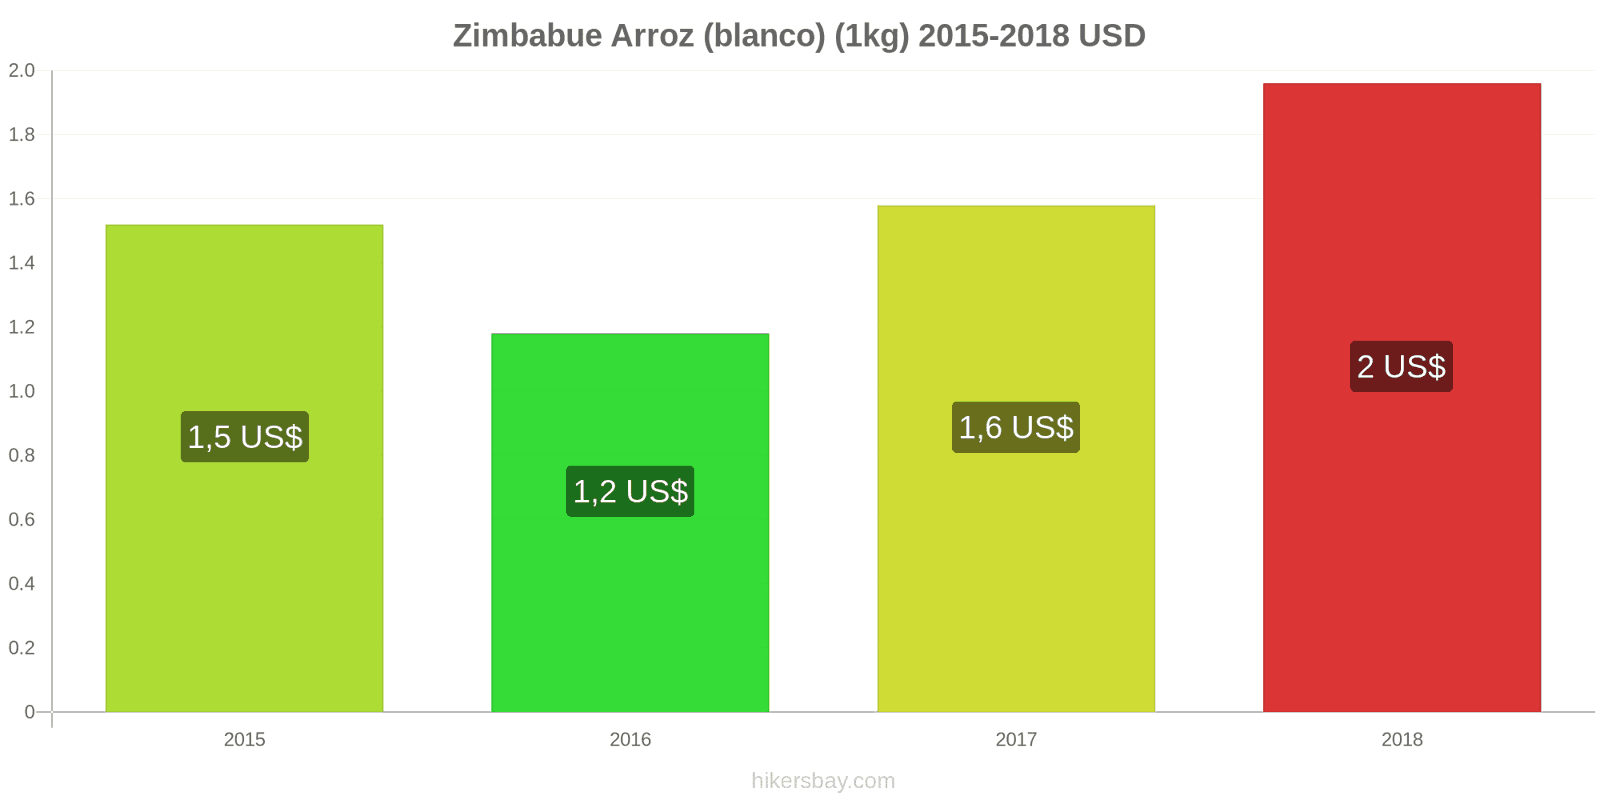 Zimbabue cambios de precios Kilo de arroz blanco hikersbay.com